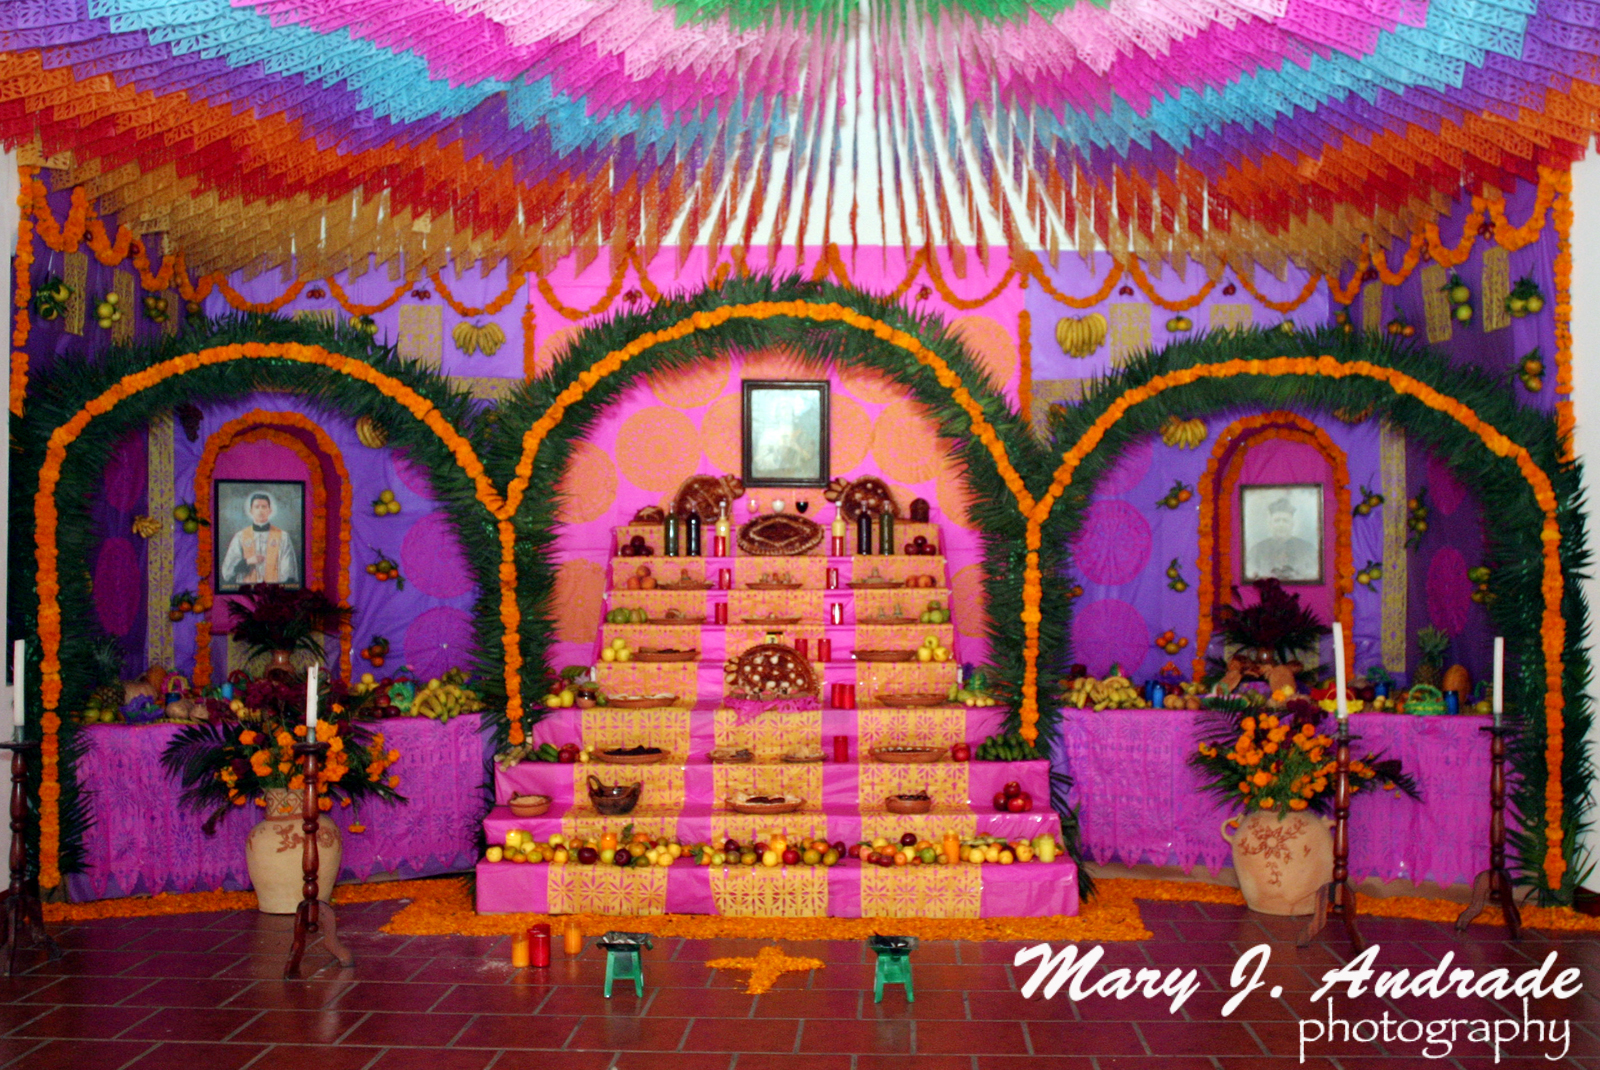 Altares en Veracruz - Day of the Dead in Mexico